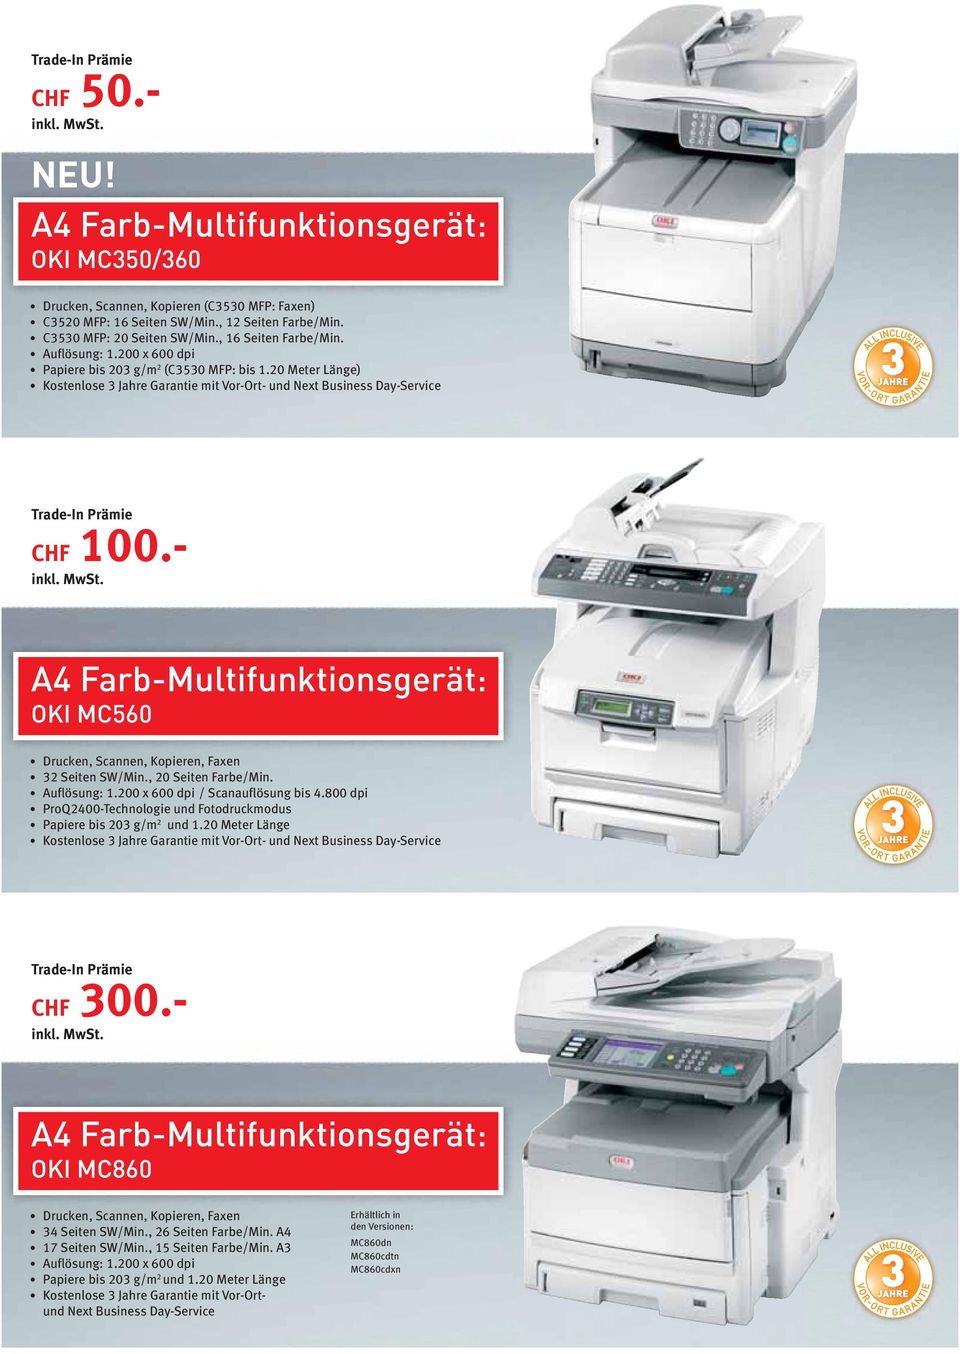 200 x 600 dpi / Scanauflösung bis 4.800 dpi ProQ2400-Technologie und Fotodruckmodus Papiere bis 203 g/m 2 und 1.20 Meter Länge CHF 300.